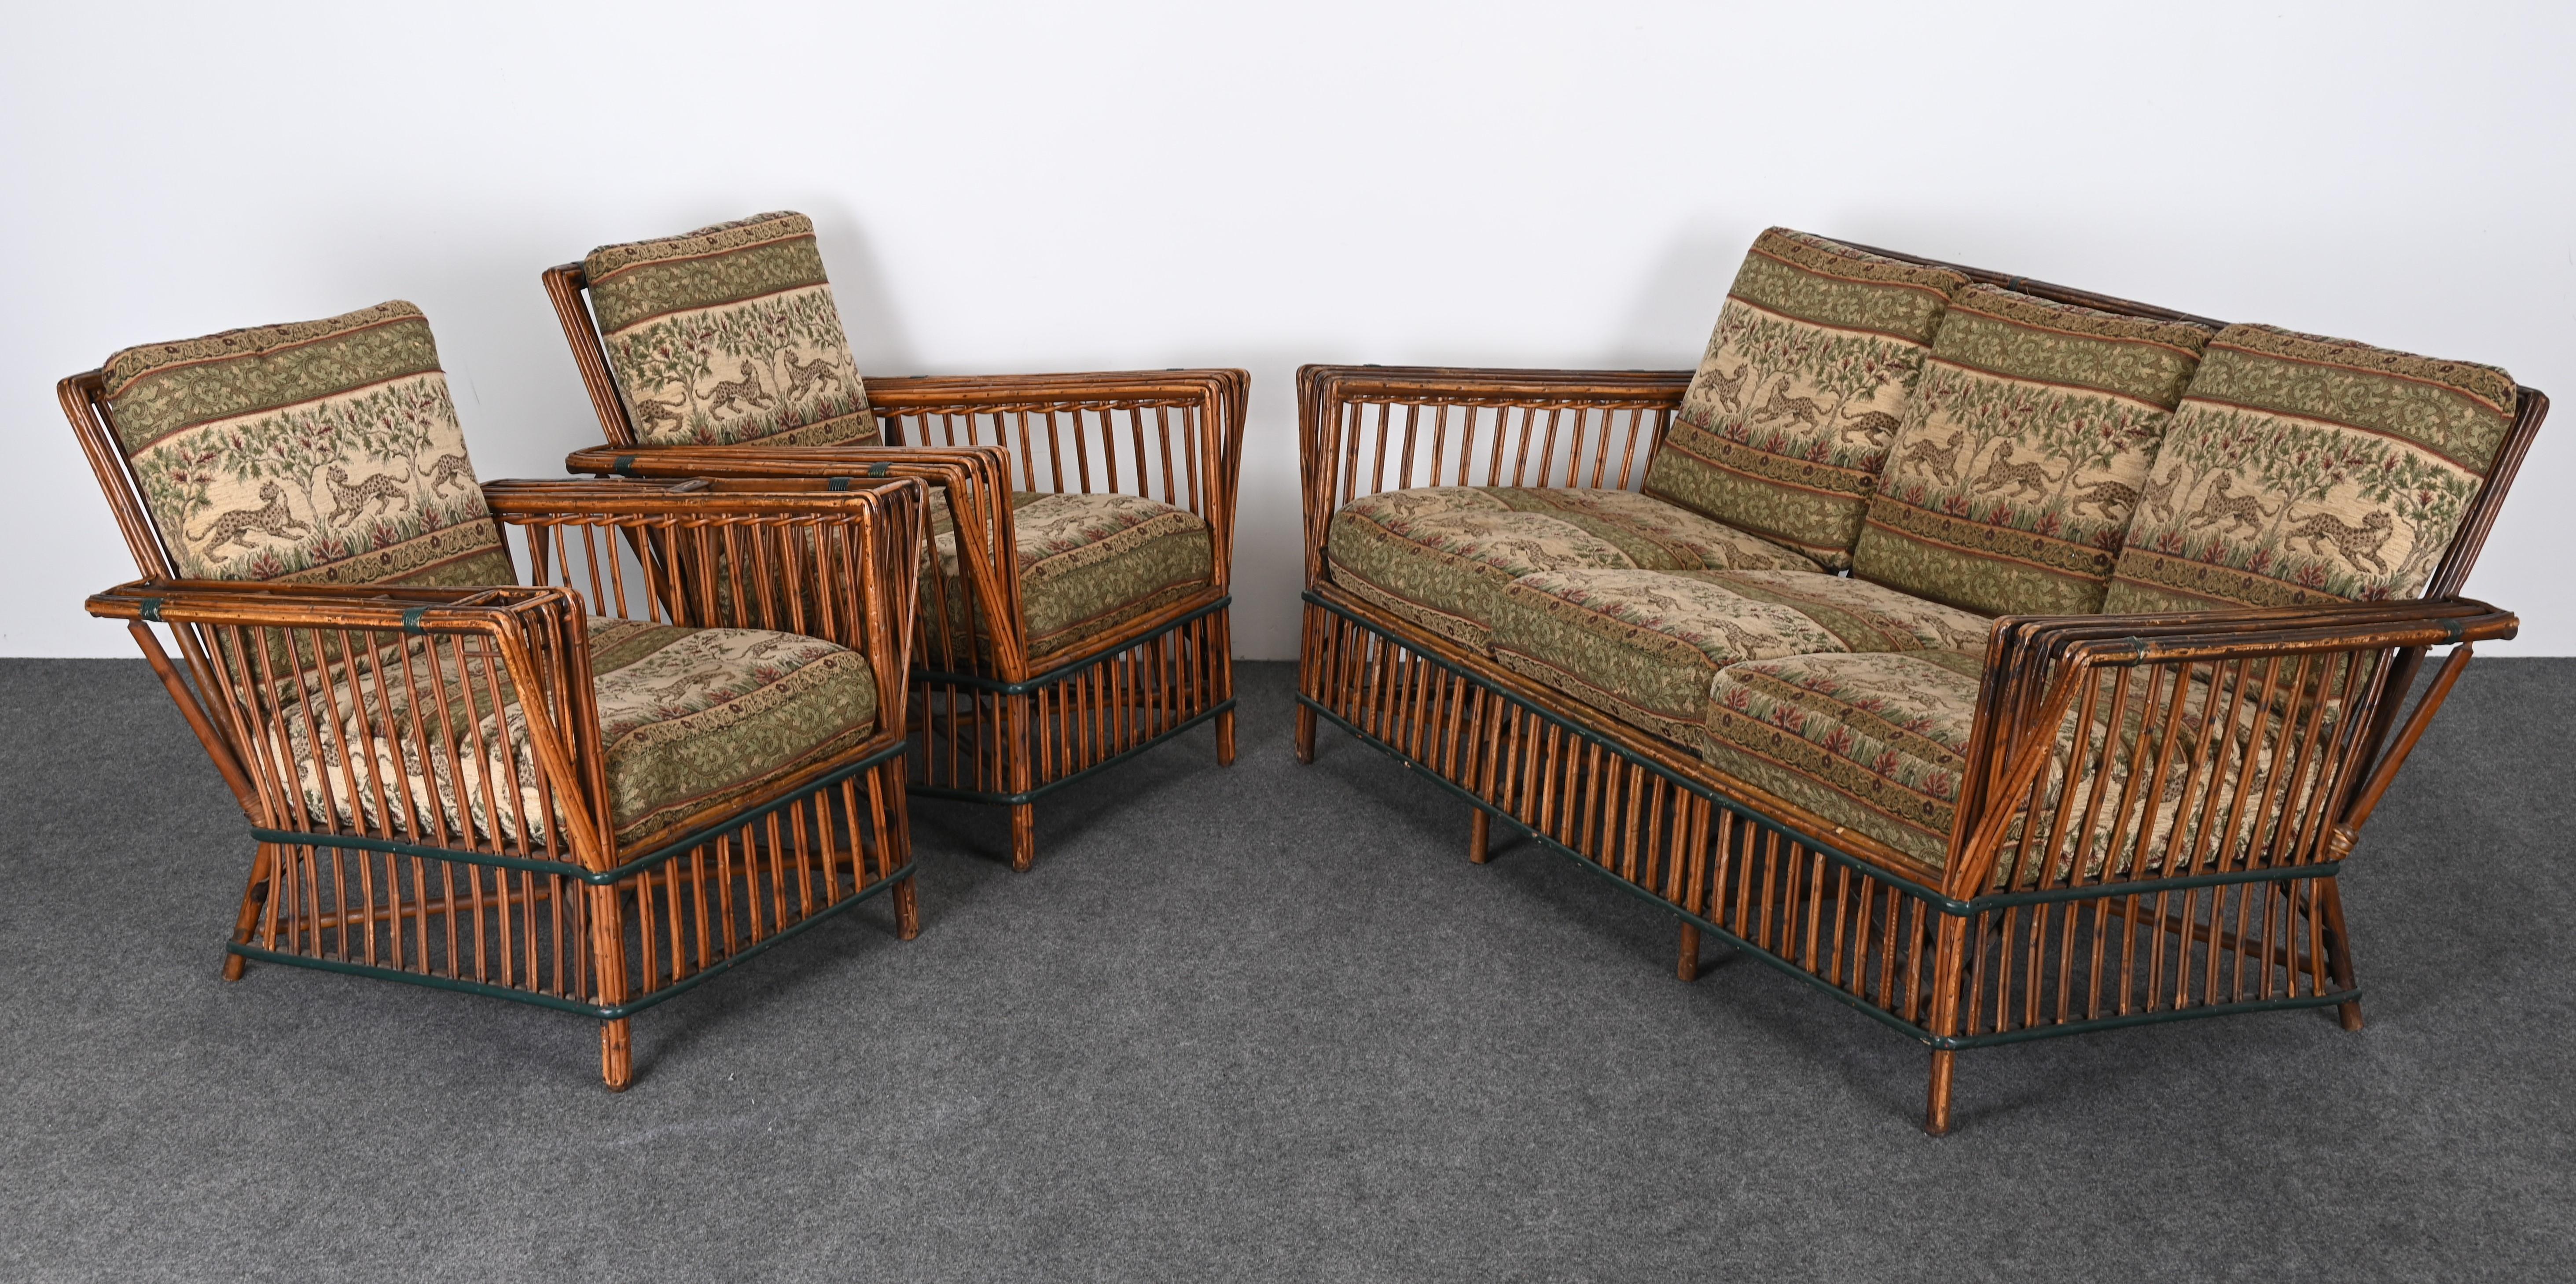 Art Deco geteilter Ypsilanti Stick Schilf Korbweide oder Sofa mit Paar Sessel, ca. 1930er Jahre (amerikanisch)